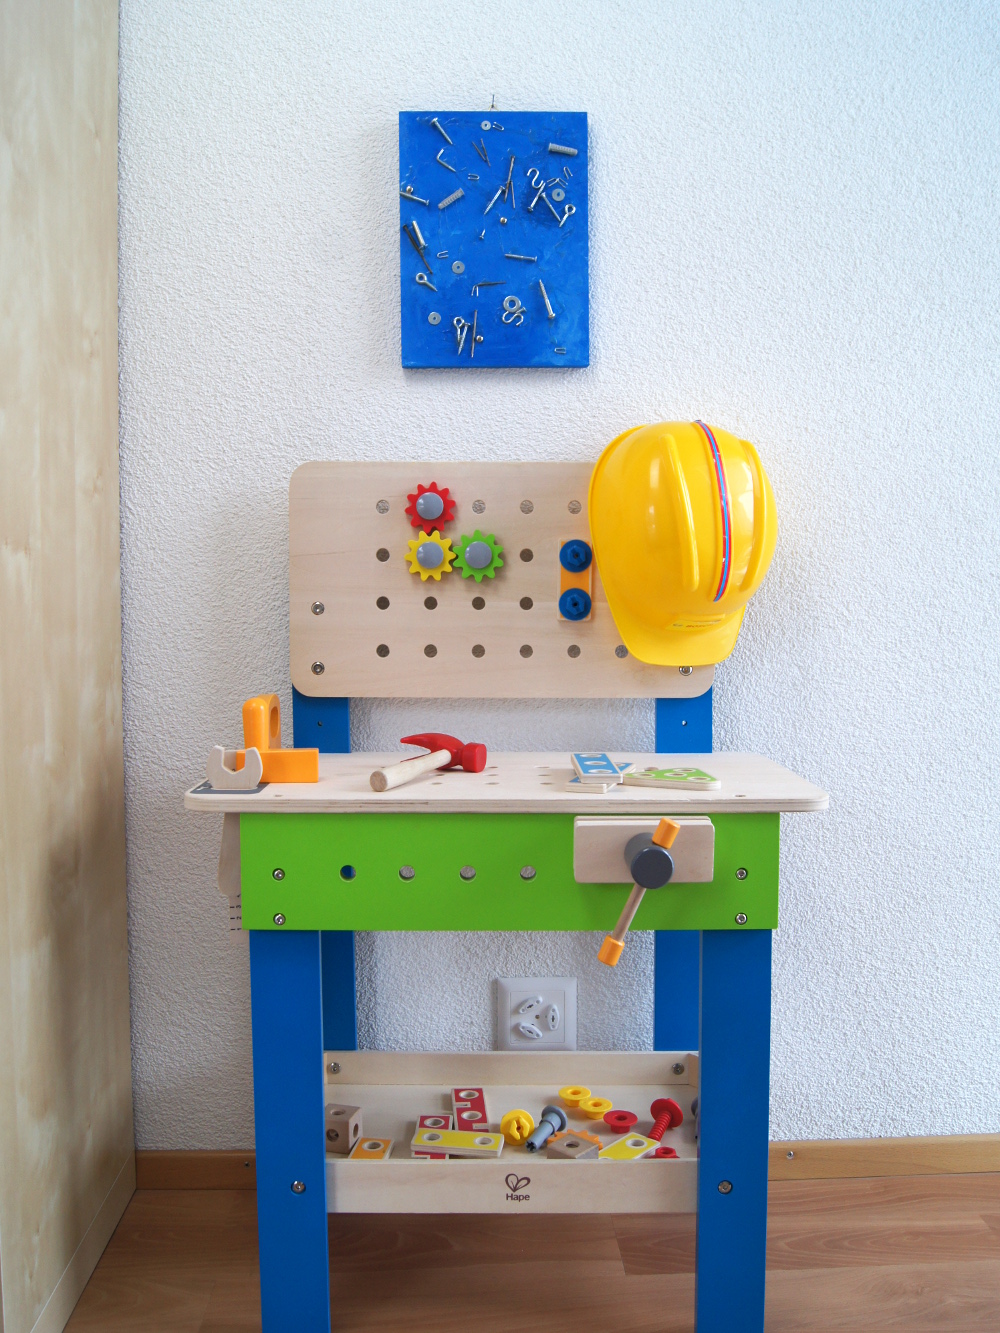 Bastelanleitung für kleine Bauarbeiter: Bild aus Schrauben und Nägeln herstellen. Kinder malen, leimen werkeln und entdecken | von Fantasiewerk #bastelnmitkindern #malenmitkindern